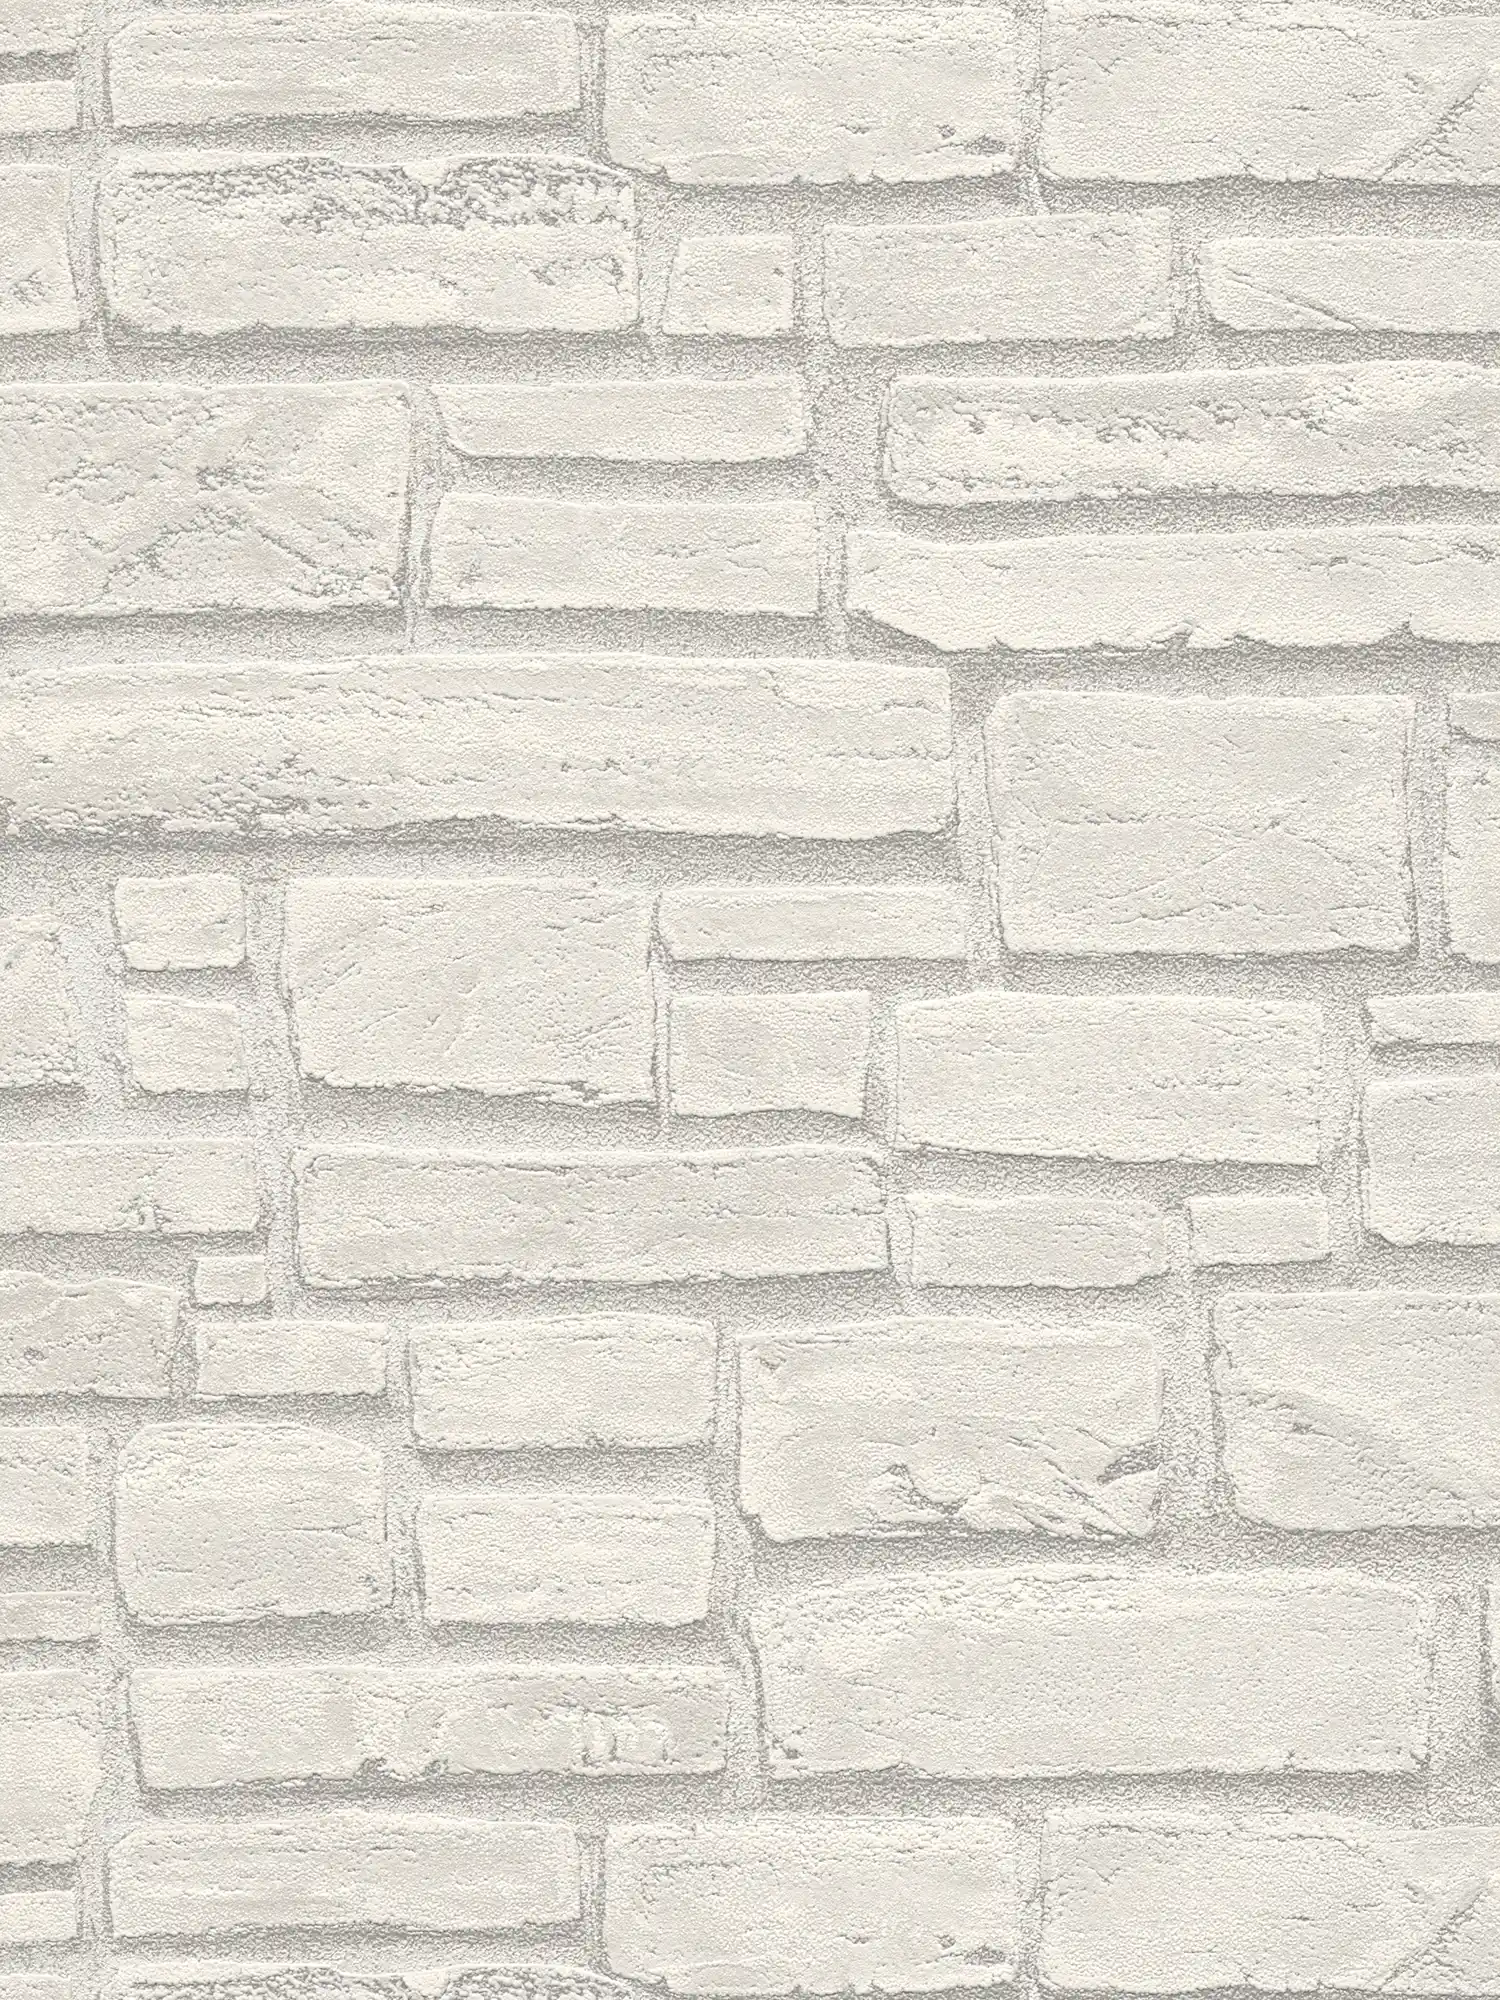         Mauerwerk-Tapete mit hellgrauen Steinen – Weiß, Grau
    